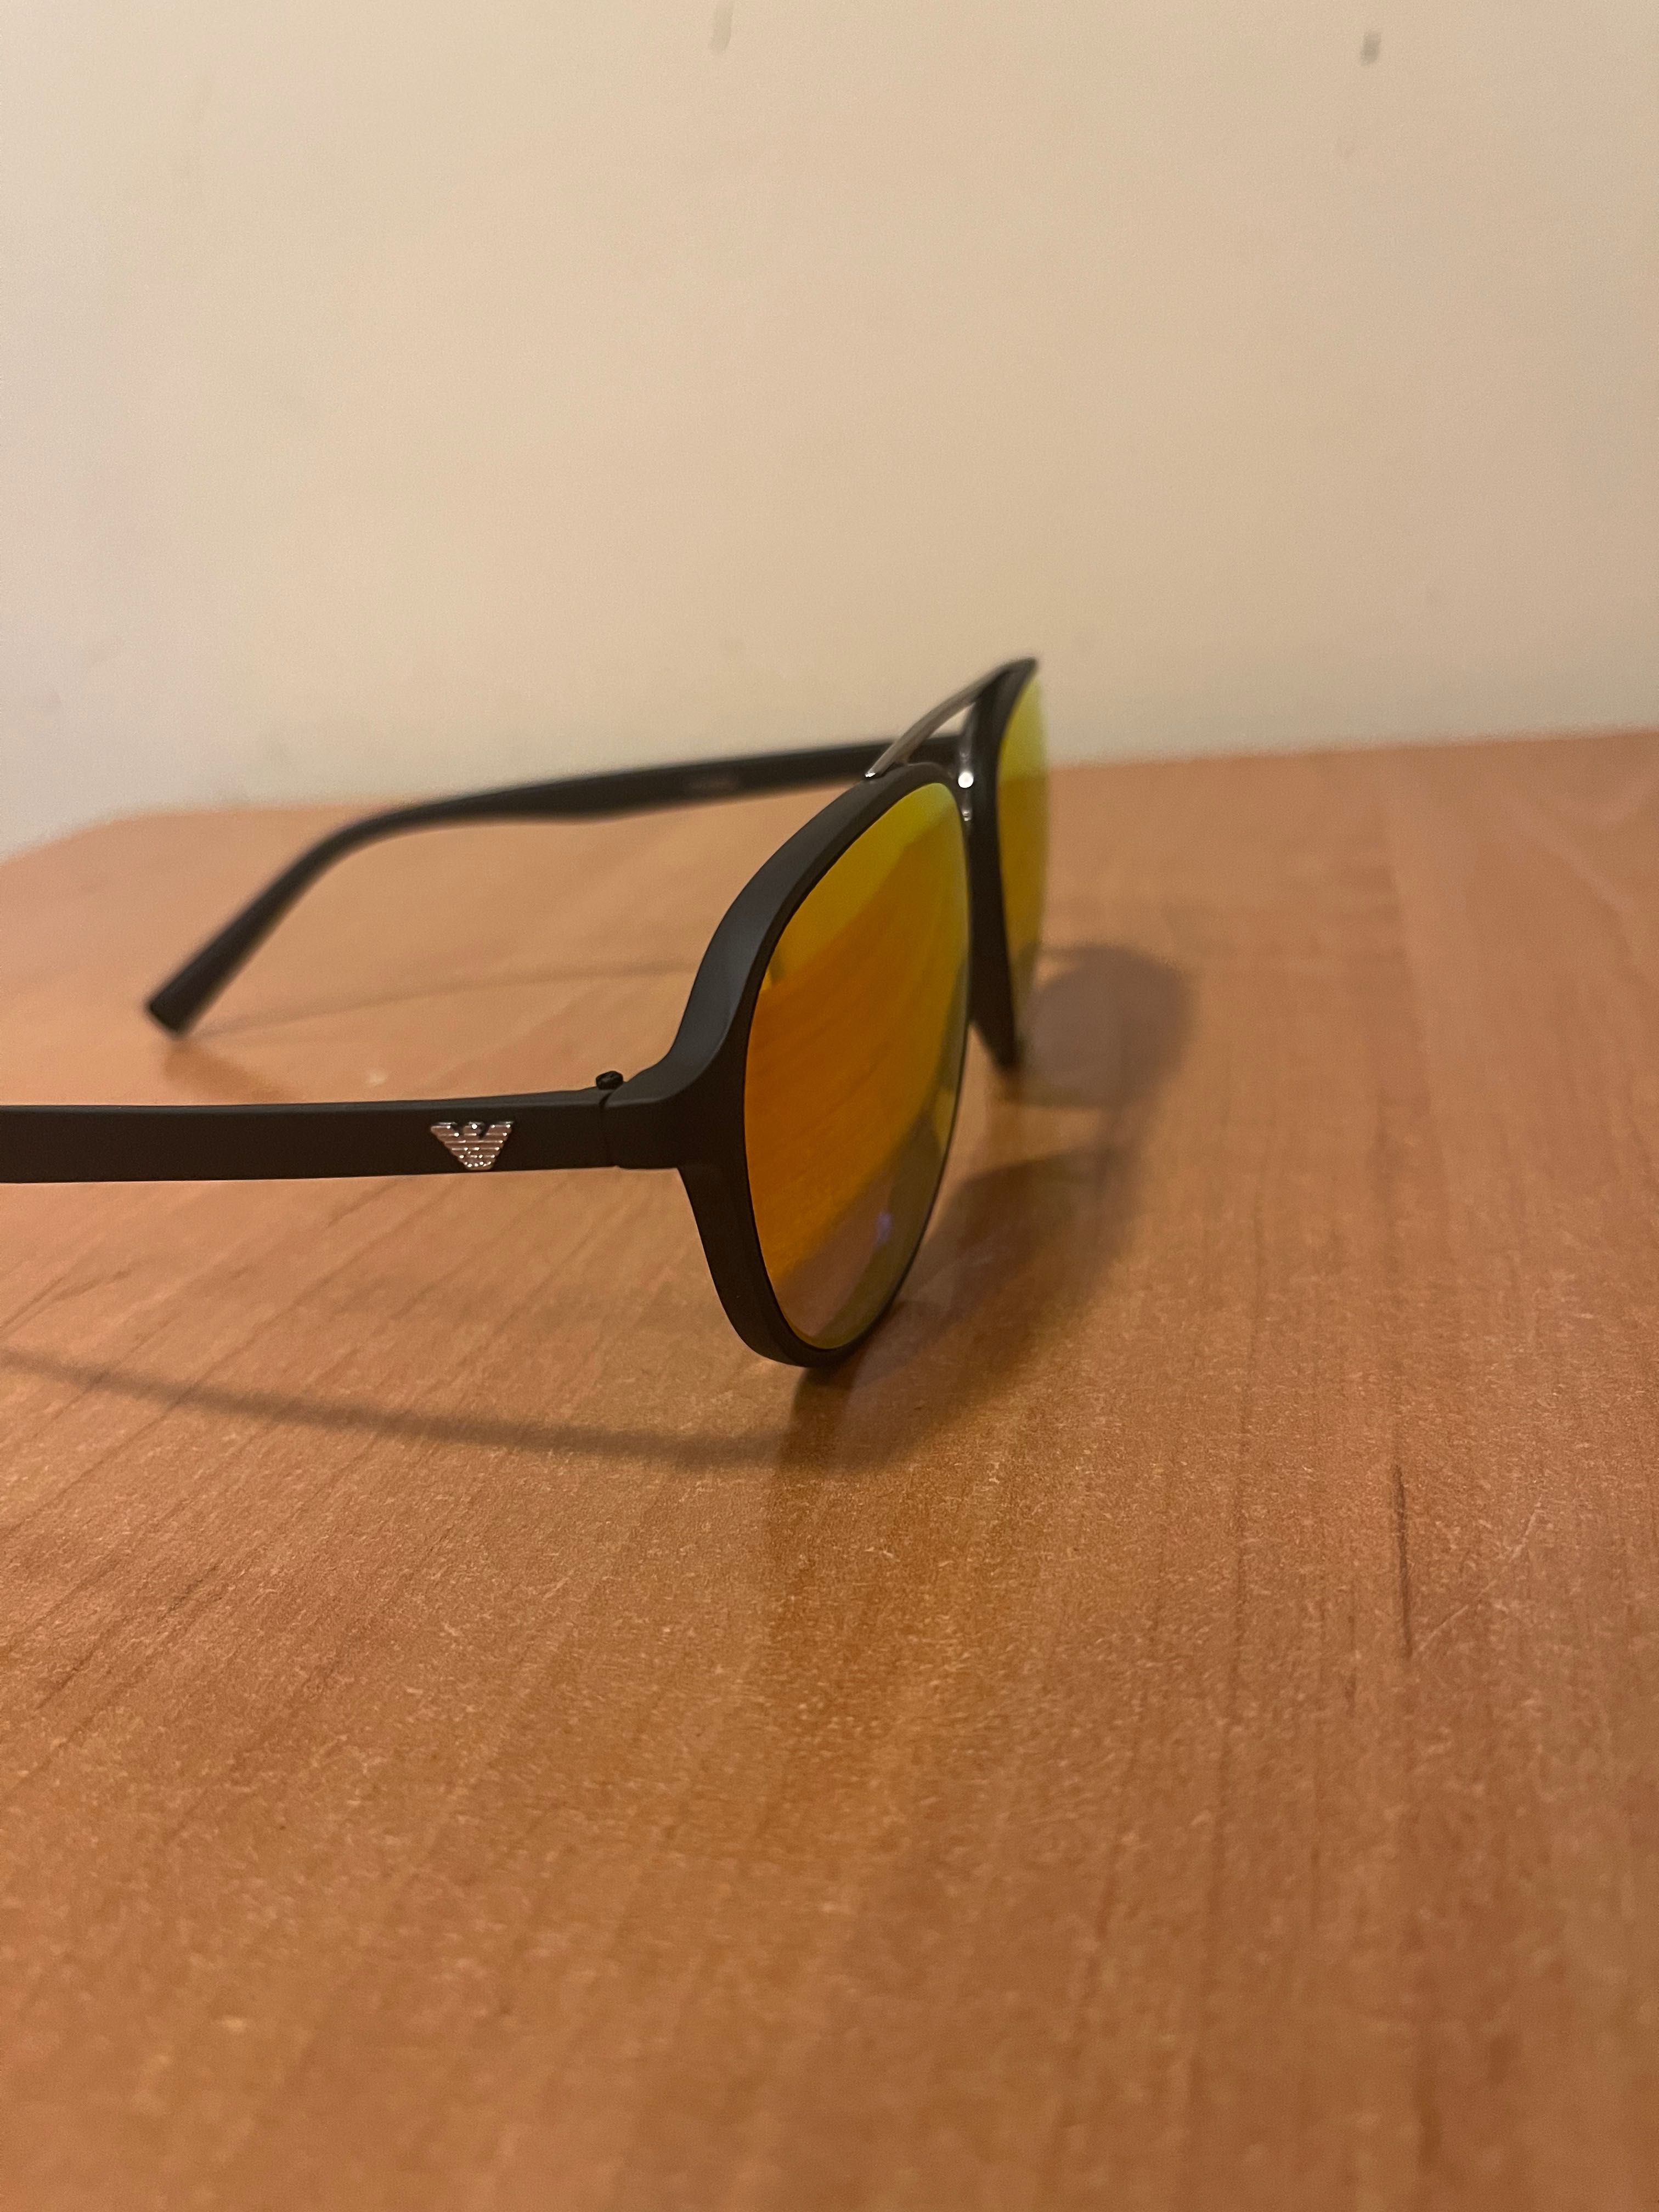 Okulary przeciwsłoneczne Emporio Armani